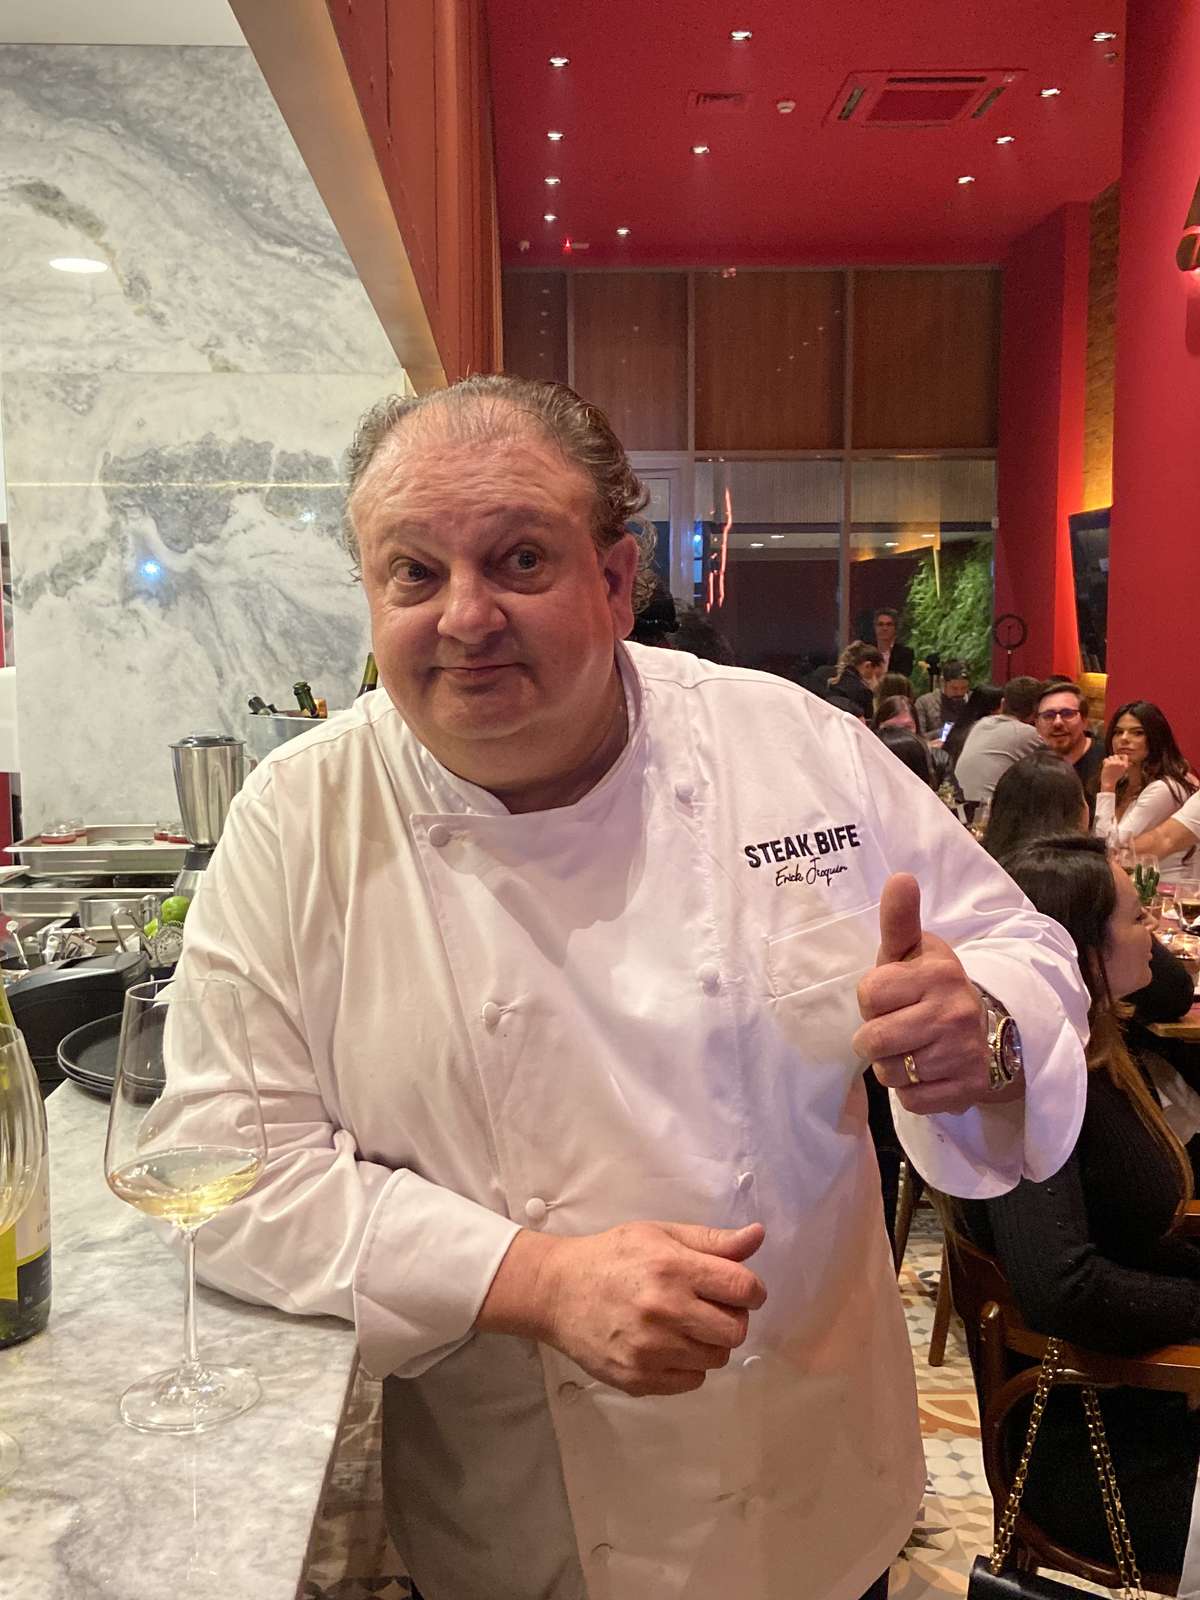 Chef Jacquin relembra o famoso episódio em restaurante de Guarulhos e volta  a dizer vergonha da profissão - Guarulhos Hoje